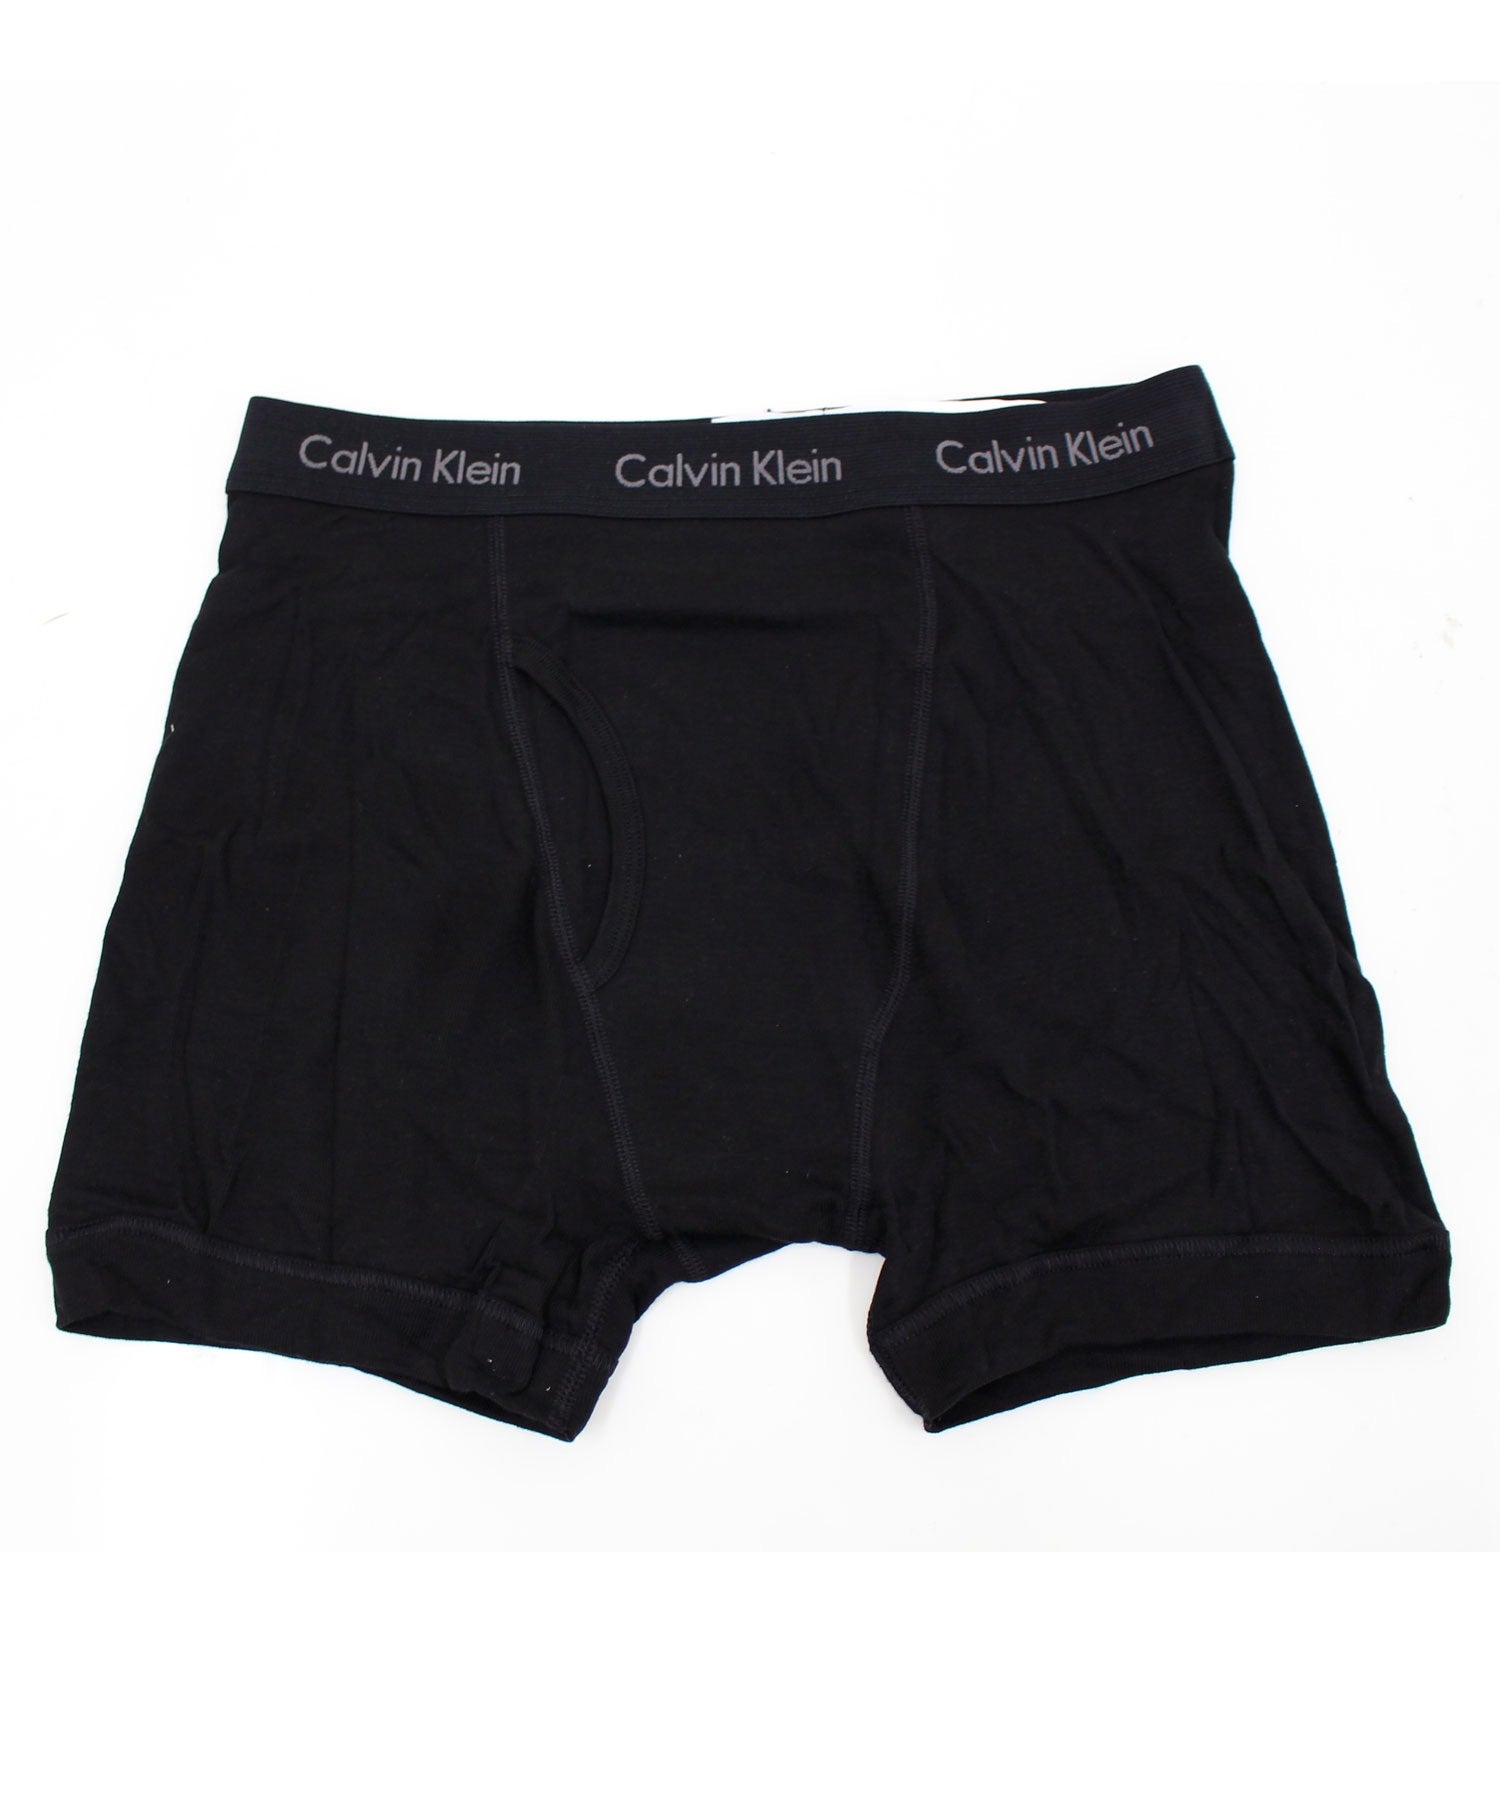 Calvin Klein カルバンクライン ボクサーパンツ クラシックフィット 3